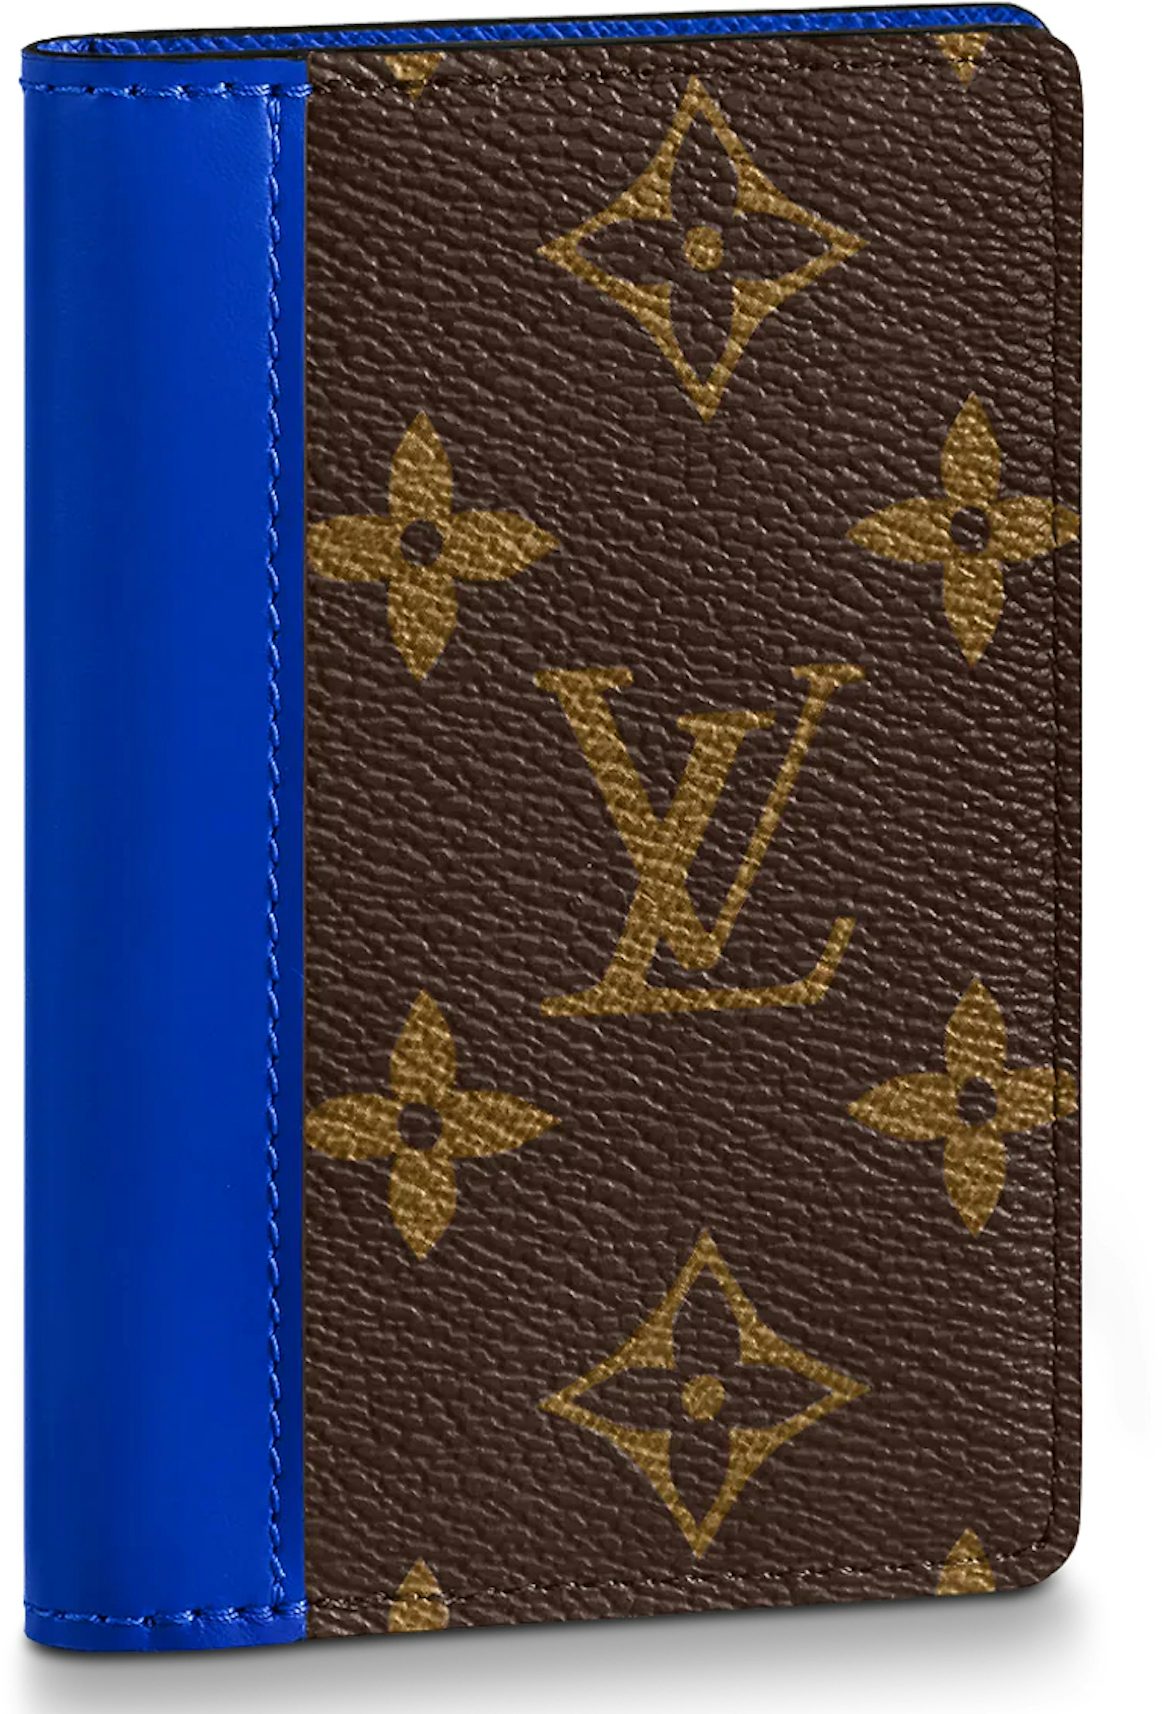 Louis Vuitton x Supreme Pocket Organizer